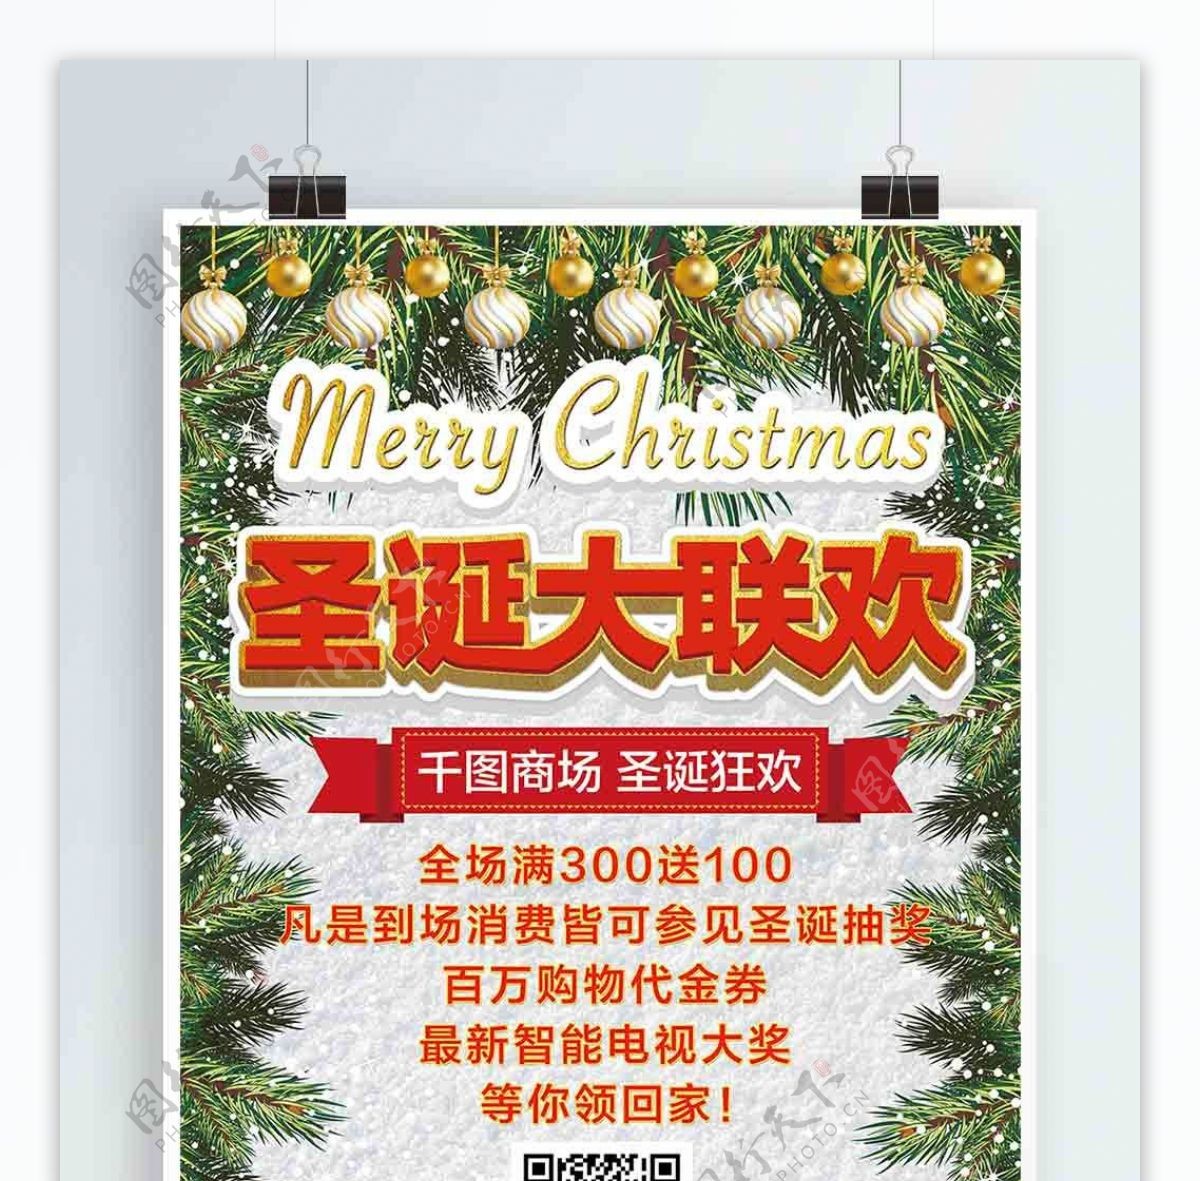 商场圣诞活动促销圣诞白色松枝吊坠宣传海报